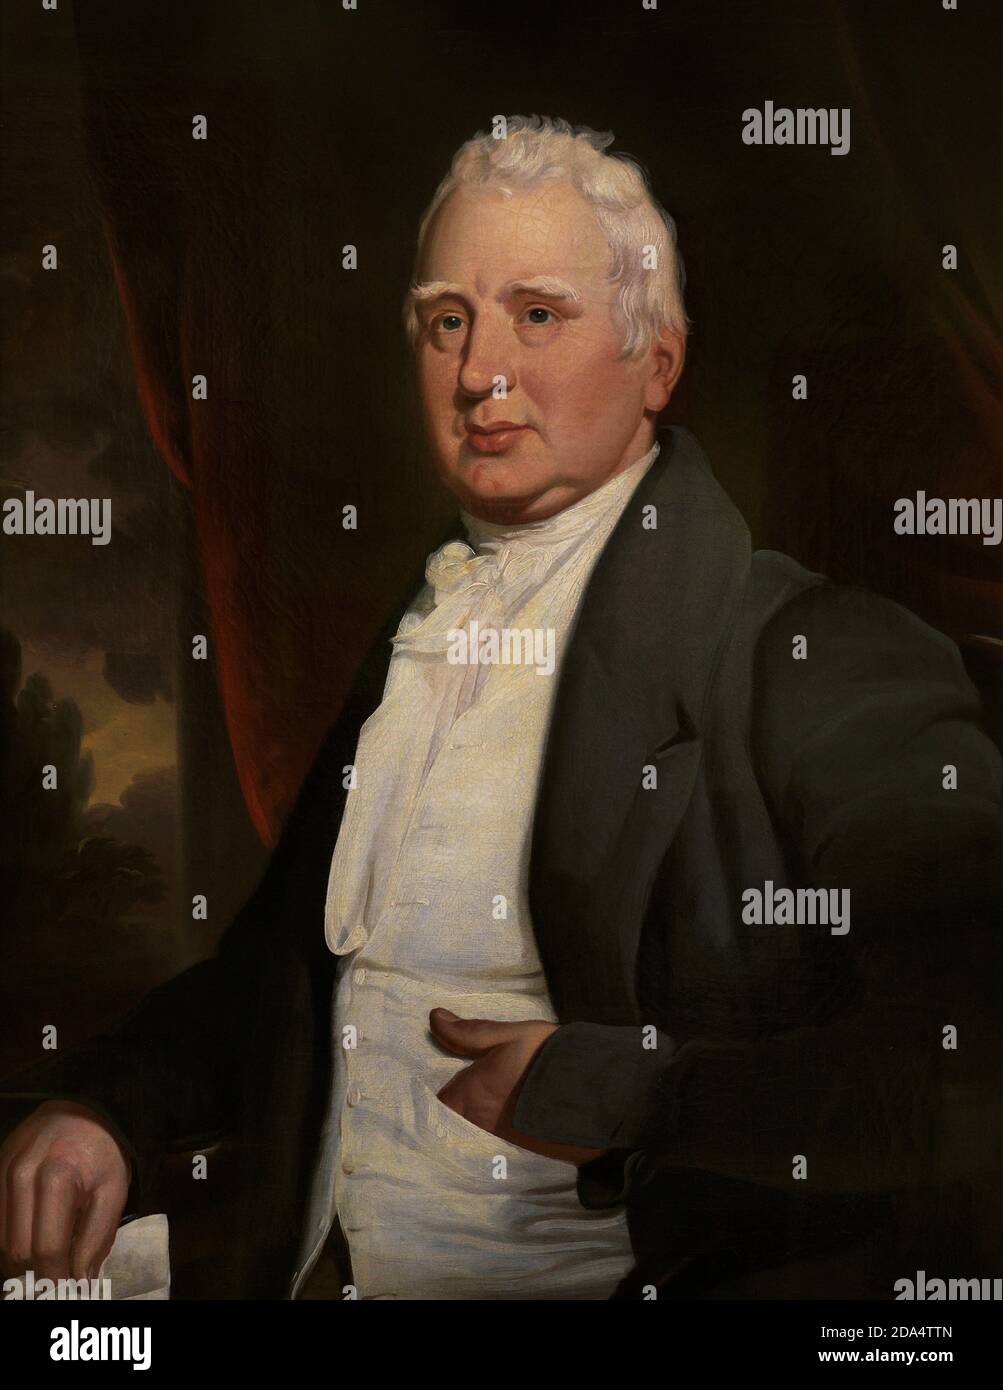 William Cobbett (1763–1835). Englische radikale Journalistin und Politikerin. Portrait, möglicherweise von George Cooke (1781-1834). Öl auf Leinwand (91,4 x 71,1 cm), c. 1831. National Portrait Gallery. London, England, Vereinigtes Königreich. Stockfoto